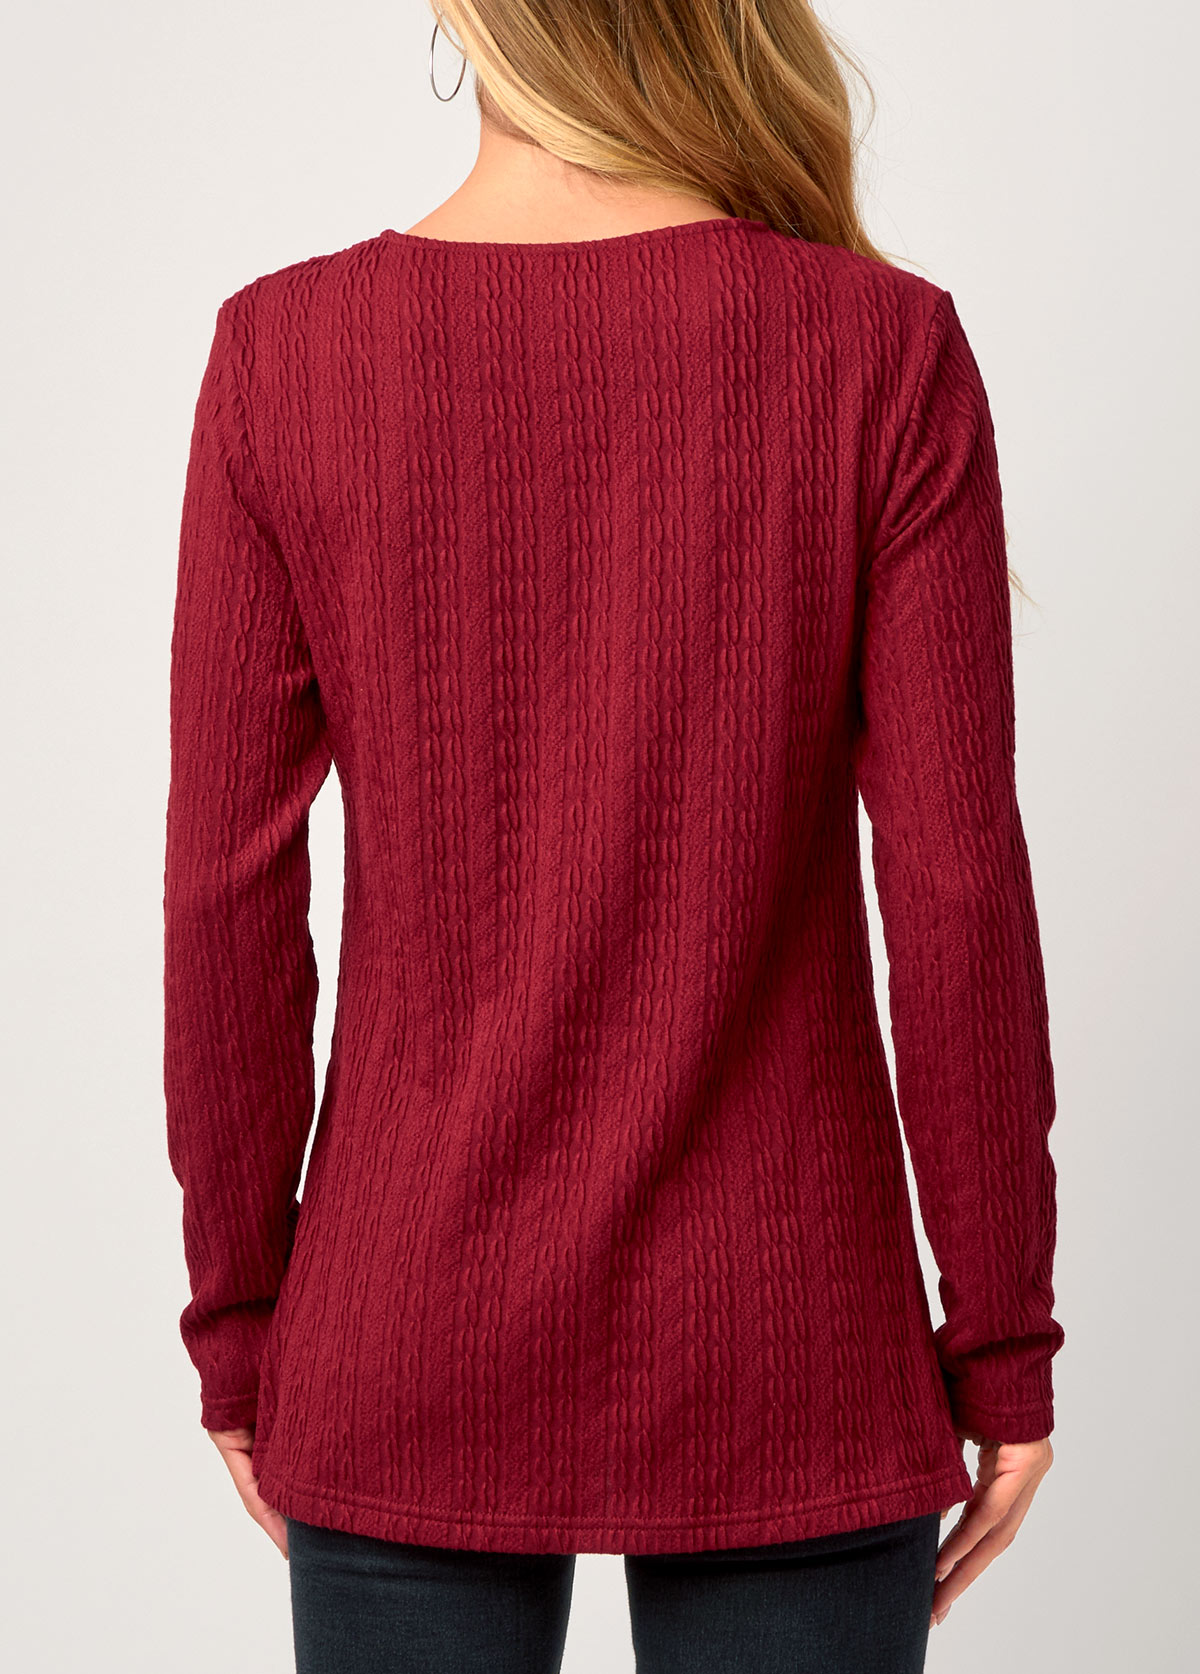 Asymmetric Hem Valentines Wine Red Round Neck Sweatshirt